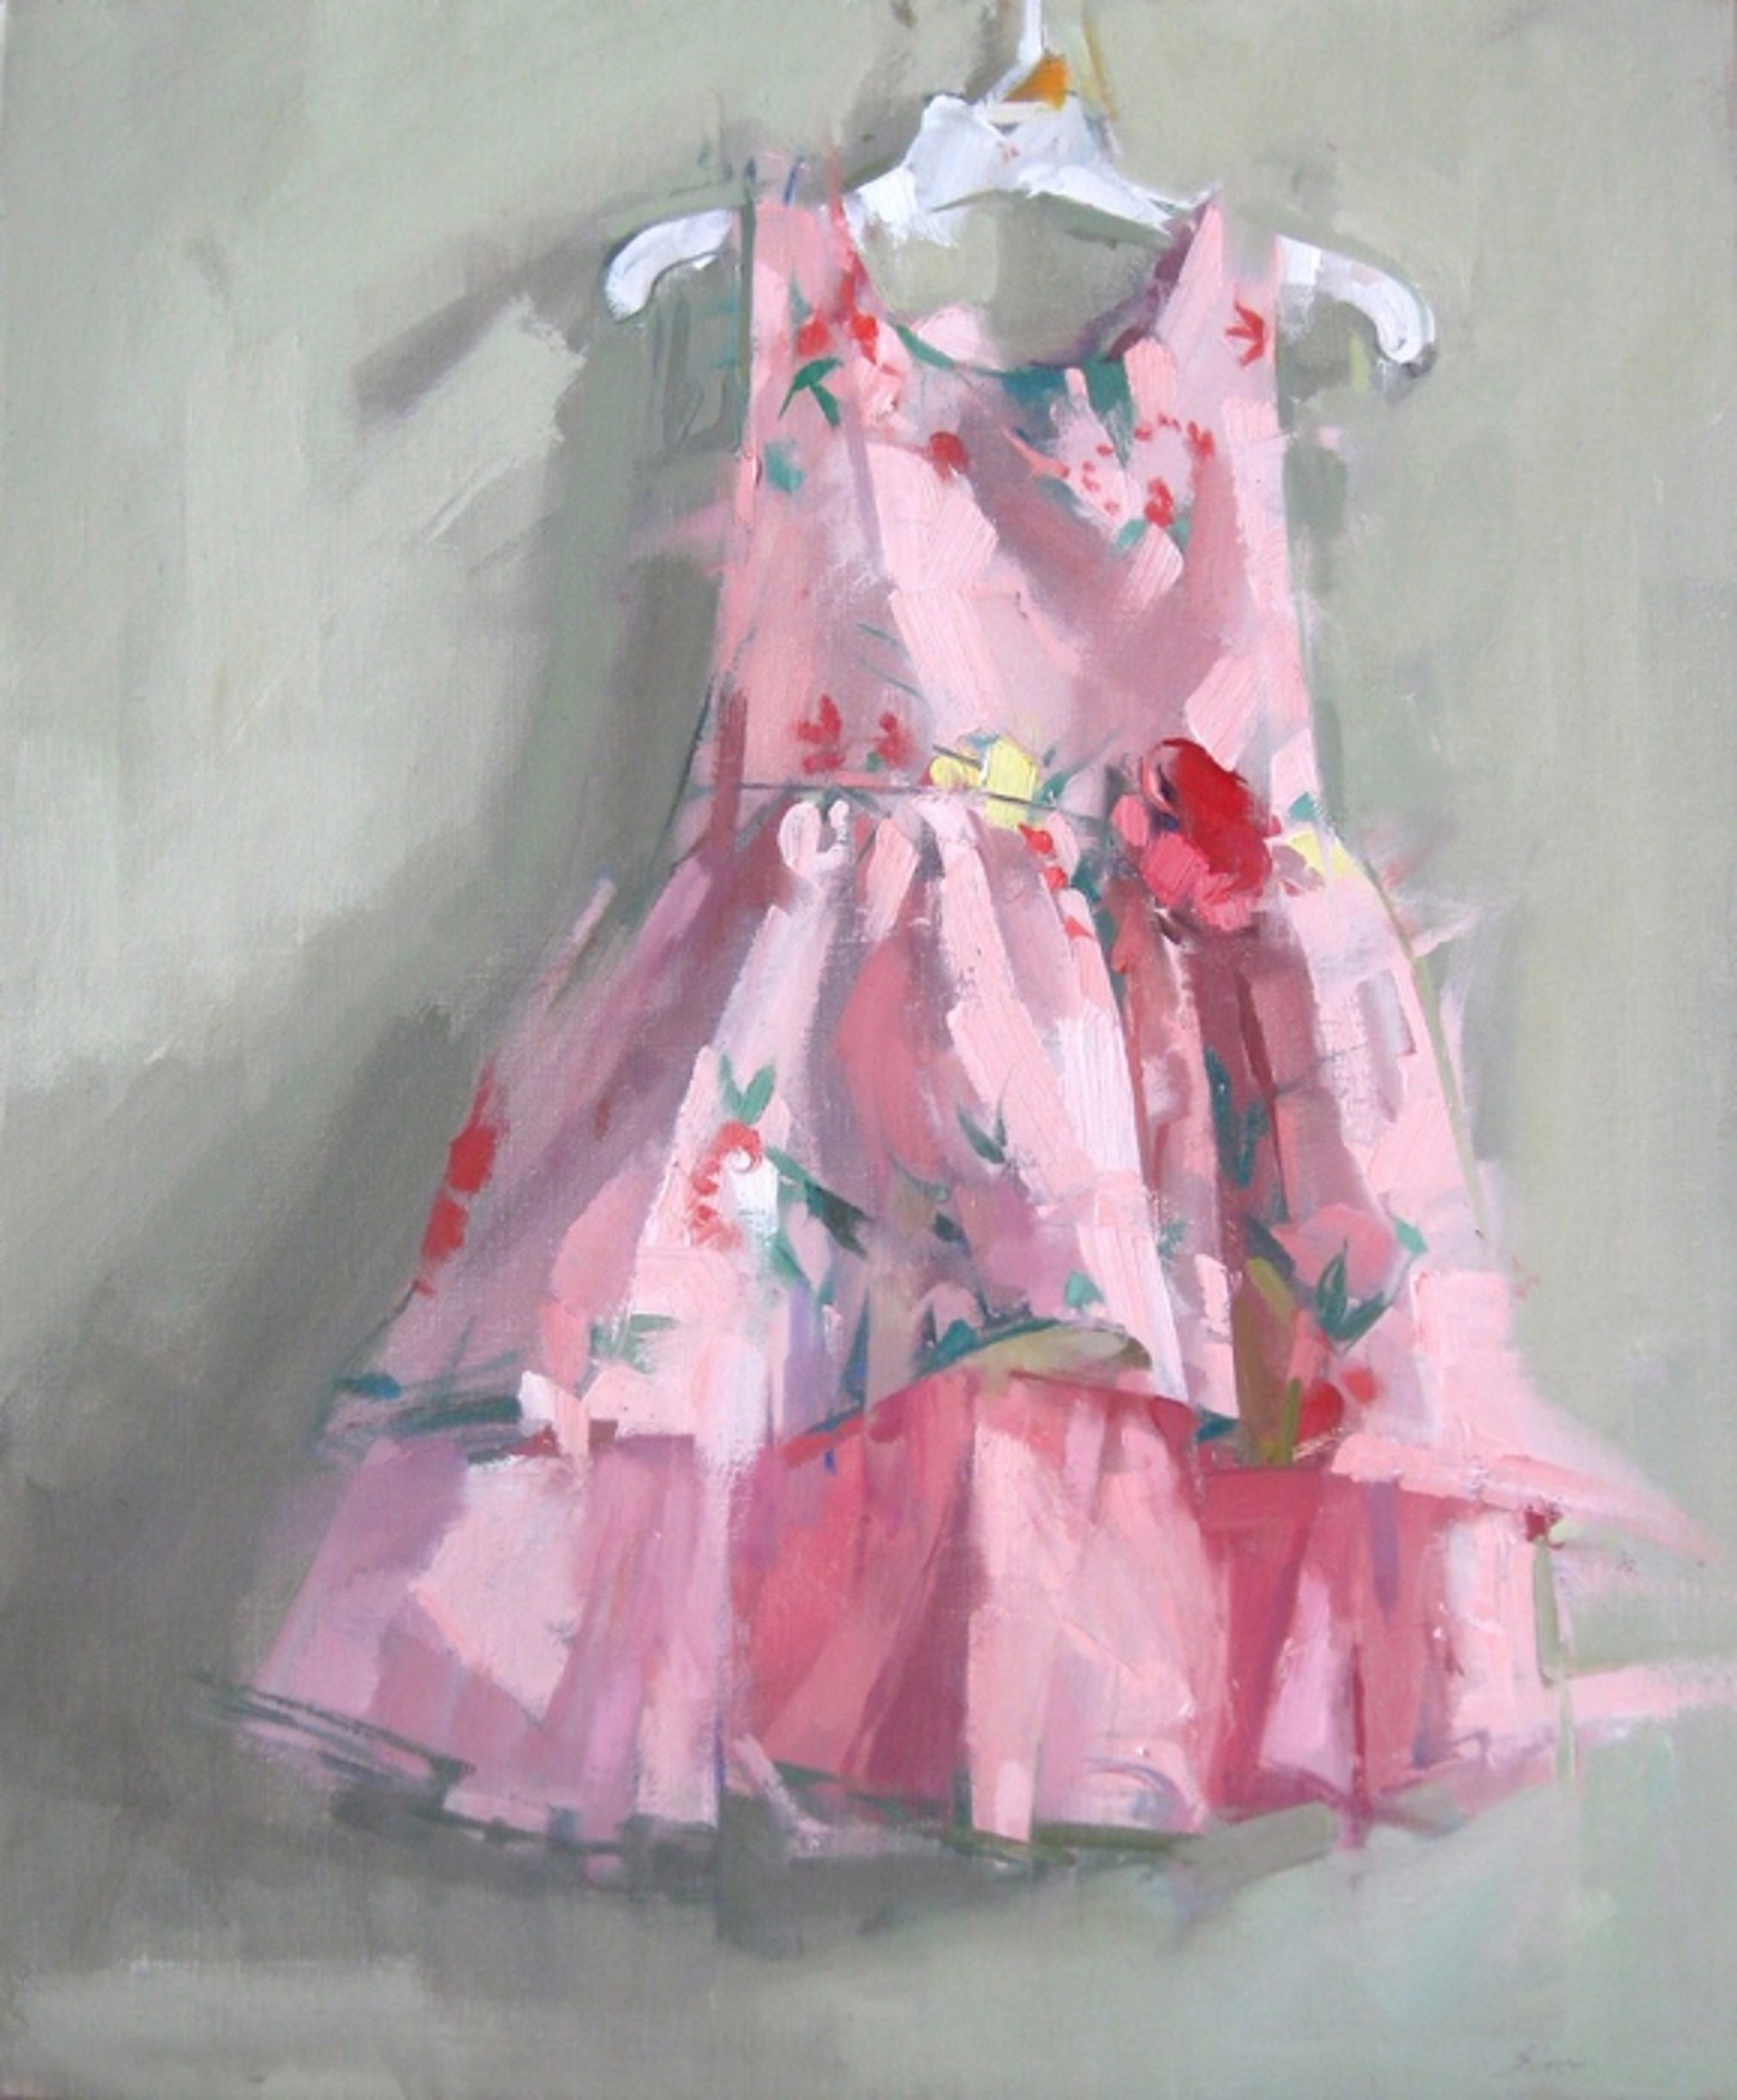 Pink Flower Dress by Maggie Siner